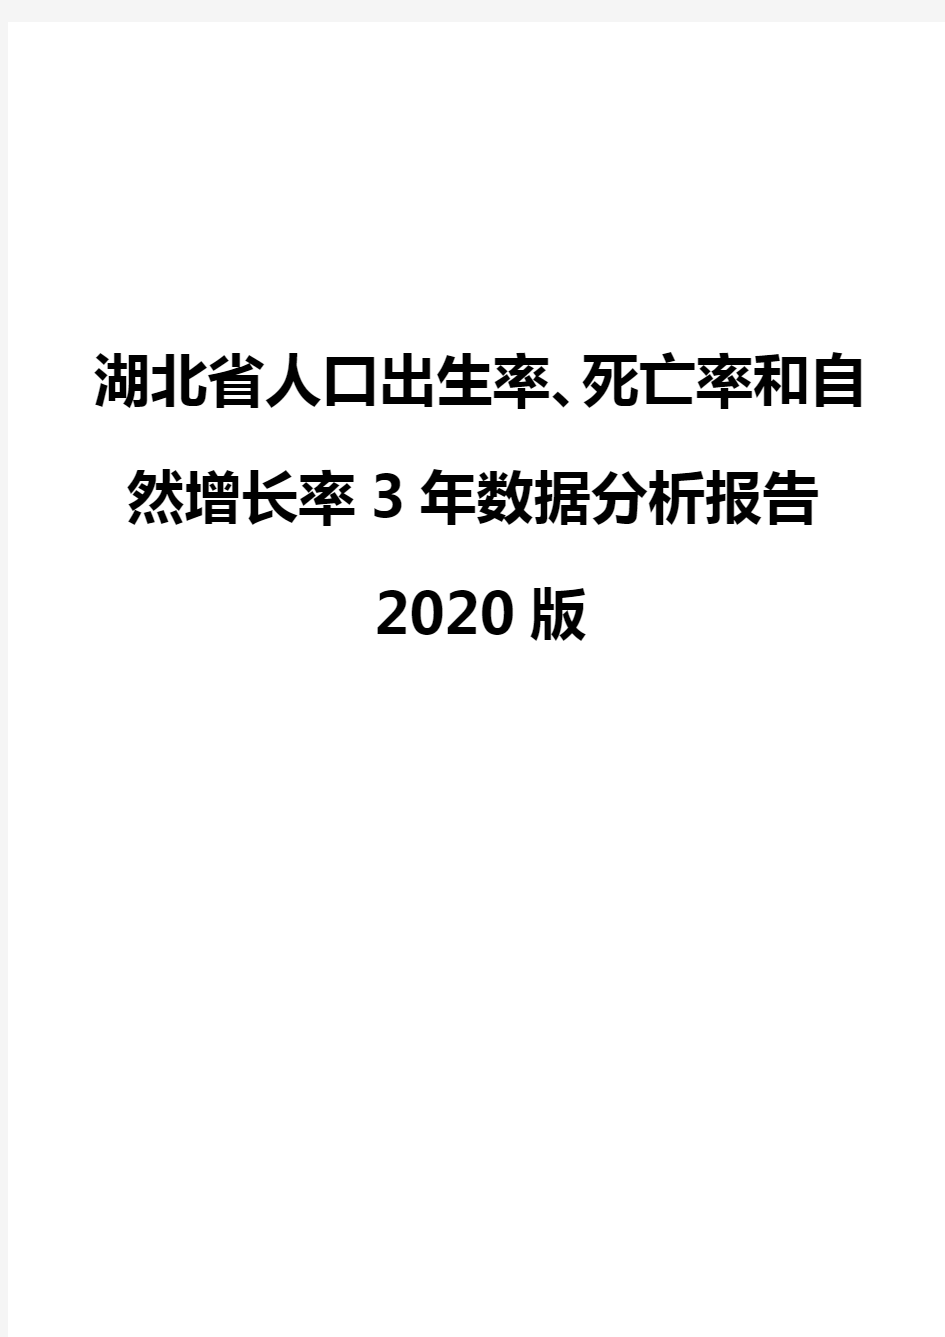 湖北省人口出生率、死亡率和自然增长率3年数据分析报告2020版